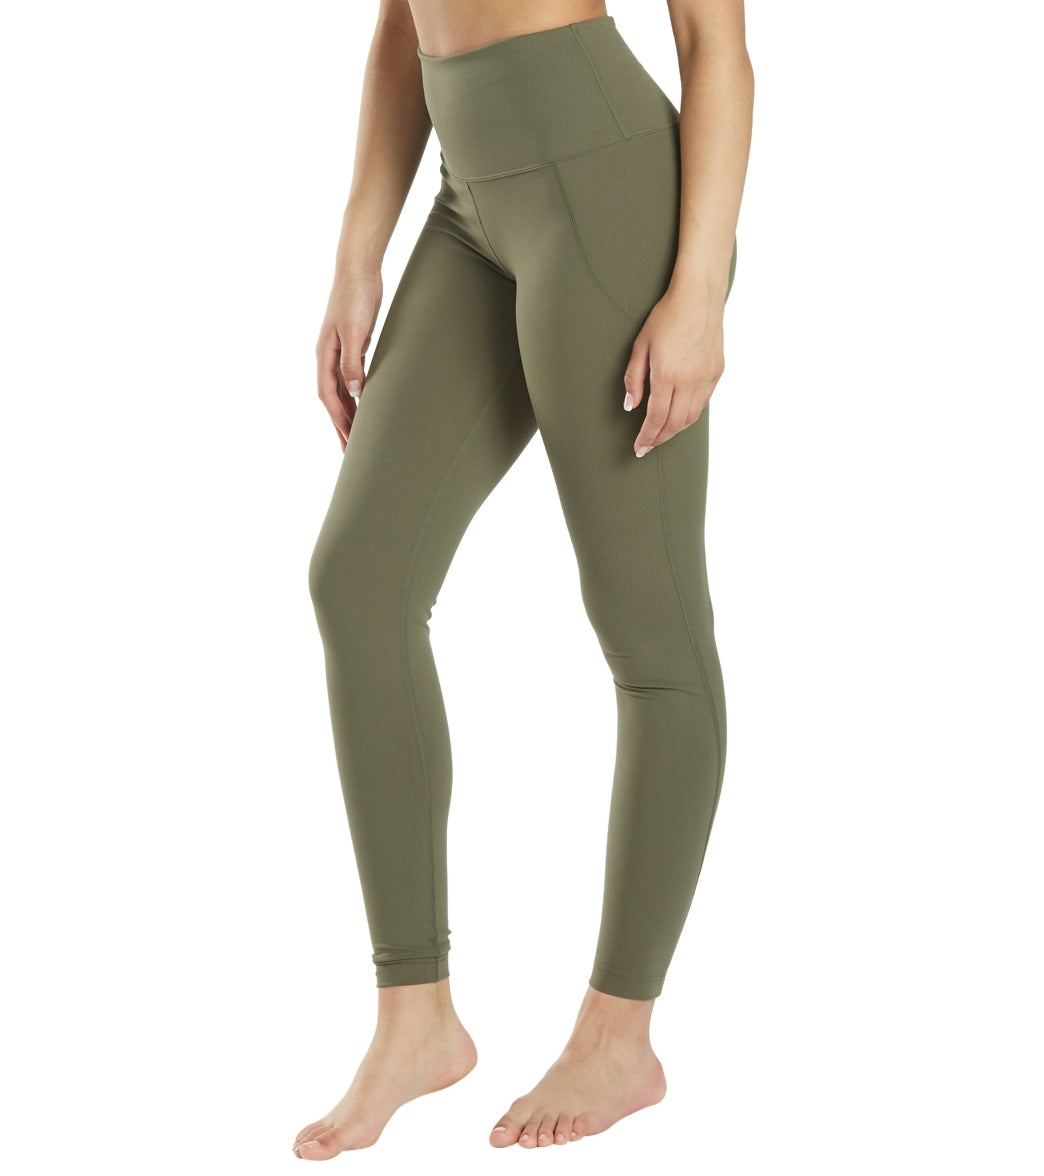 Women's High Waist Yoga Tummy Control Stretch Shorts, 8 Inch - Army Green /  S